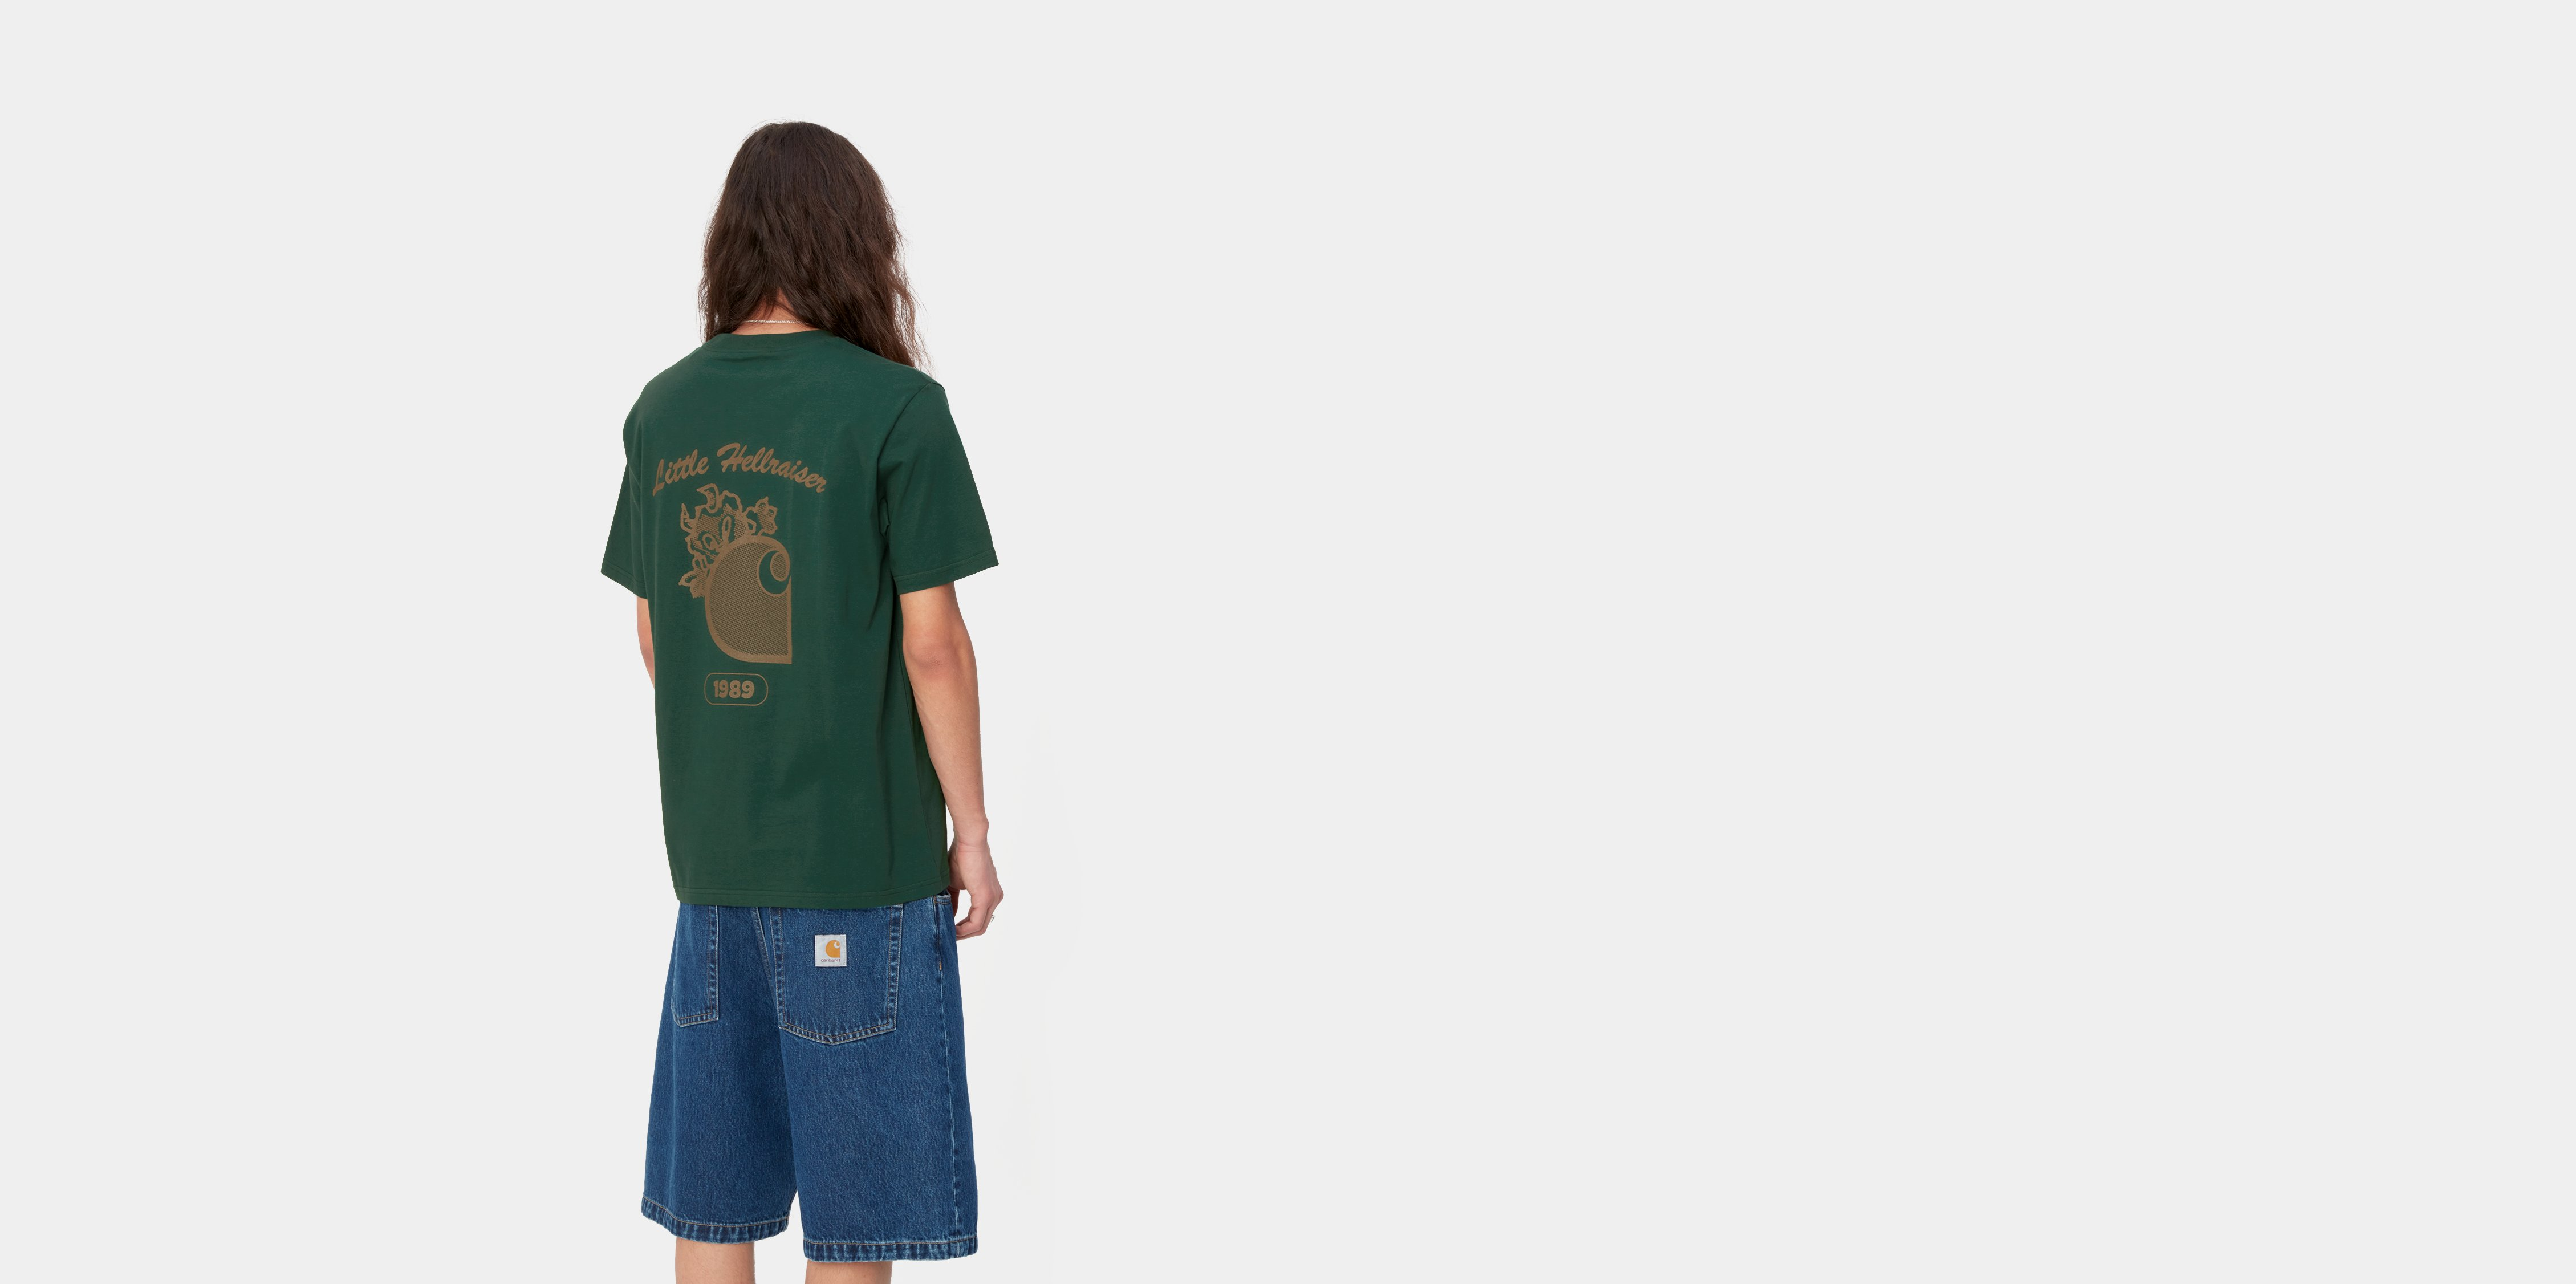 Carhartt WIP S/S Little Hellraiser T-Shirt | Carhartt WIP